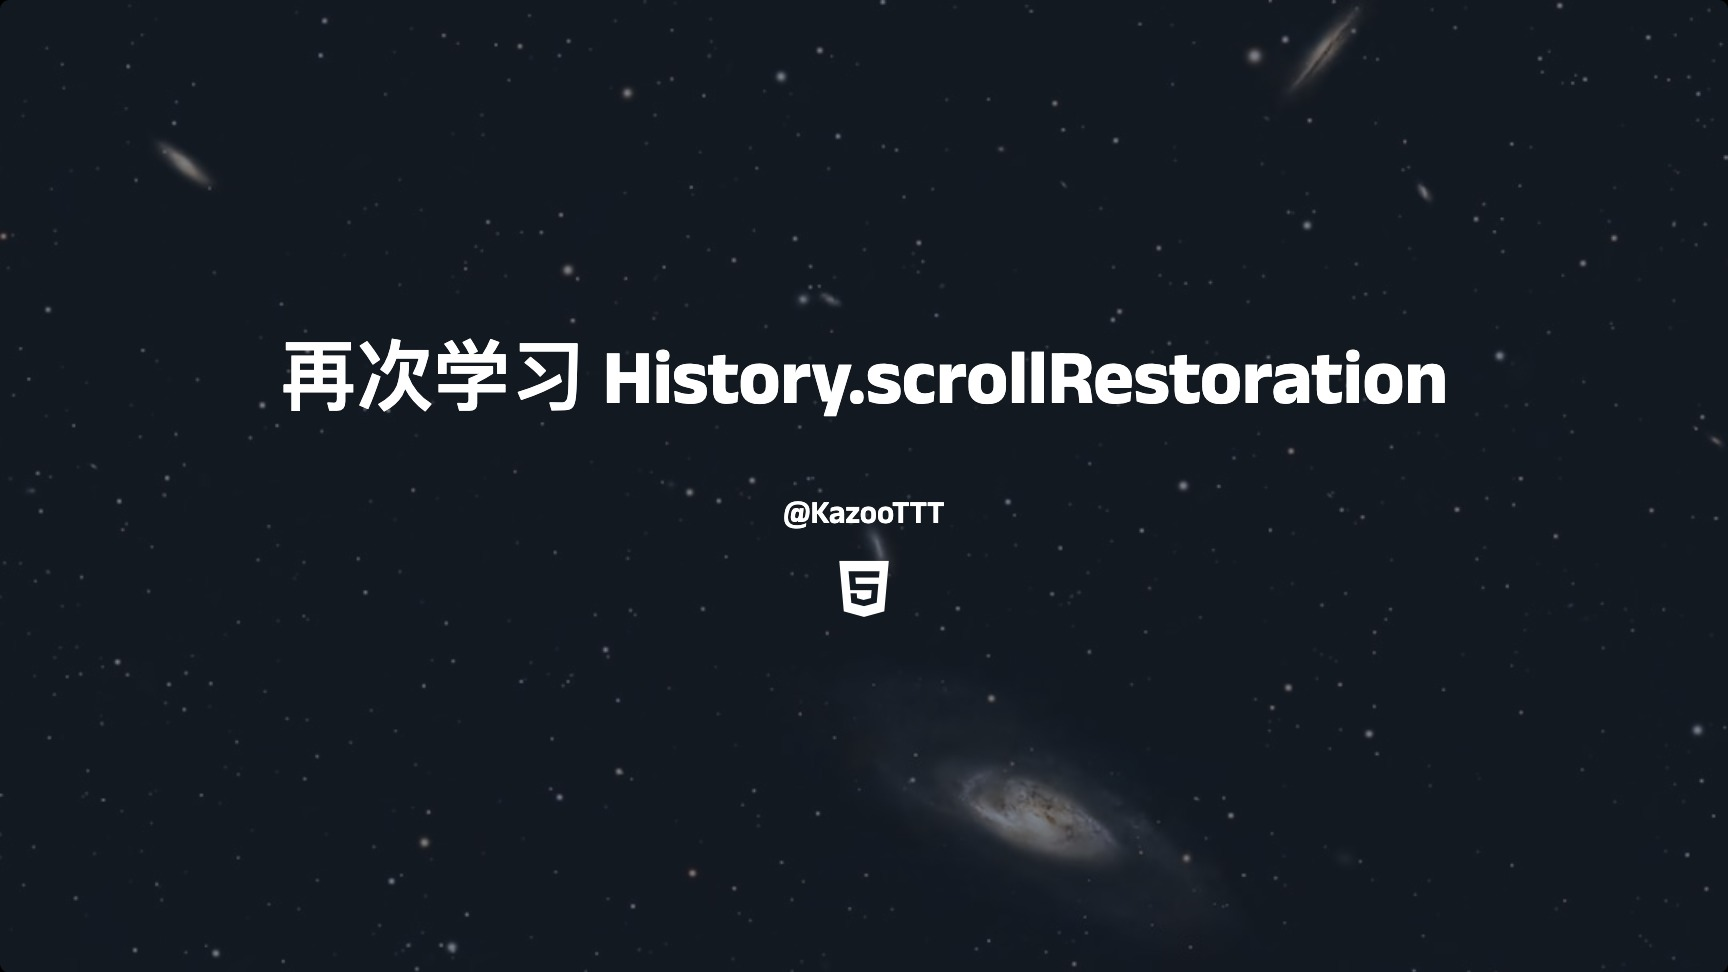 再次学习History.scrollRestoration